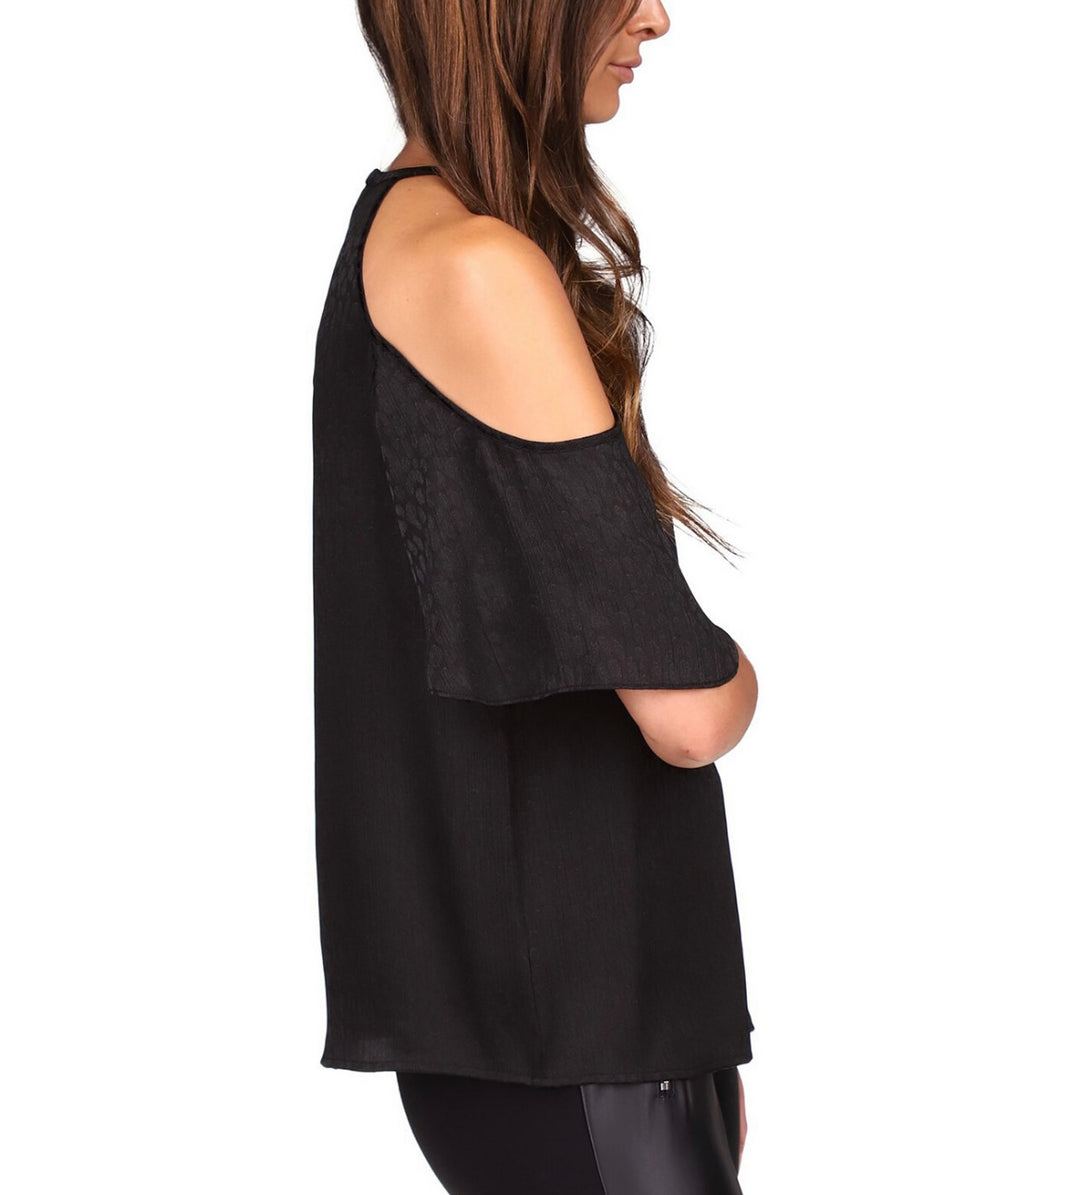 Michael Kors Women's Cold-Shoulder Chain Neck Top Black Size L